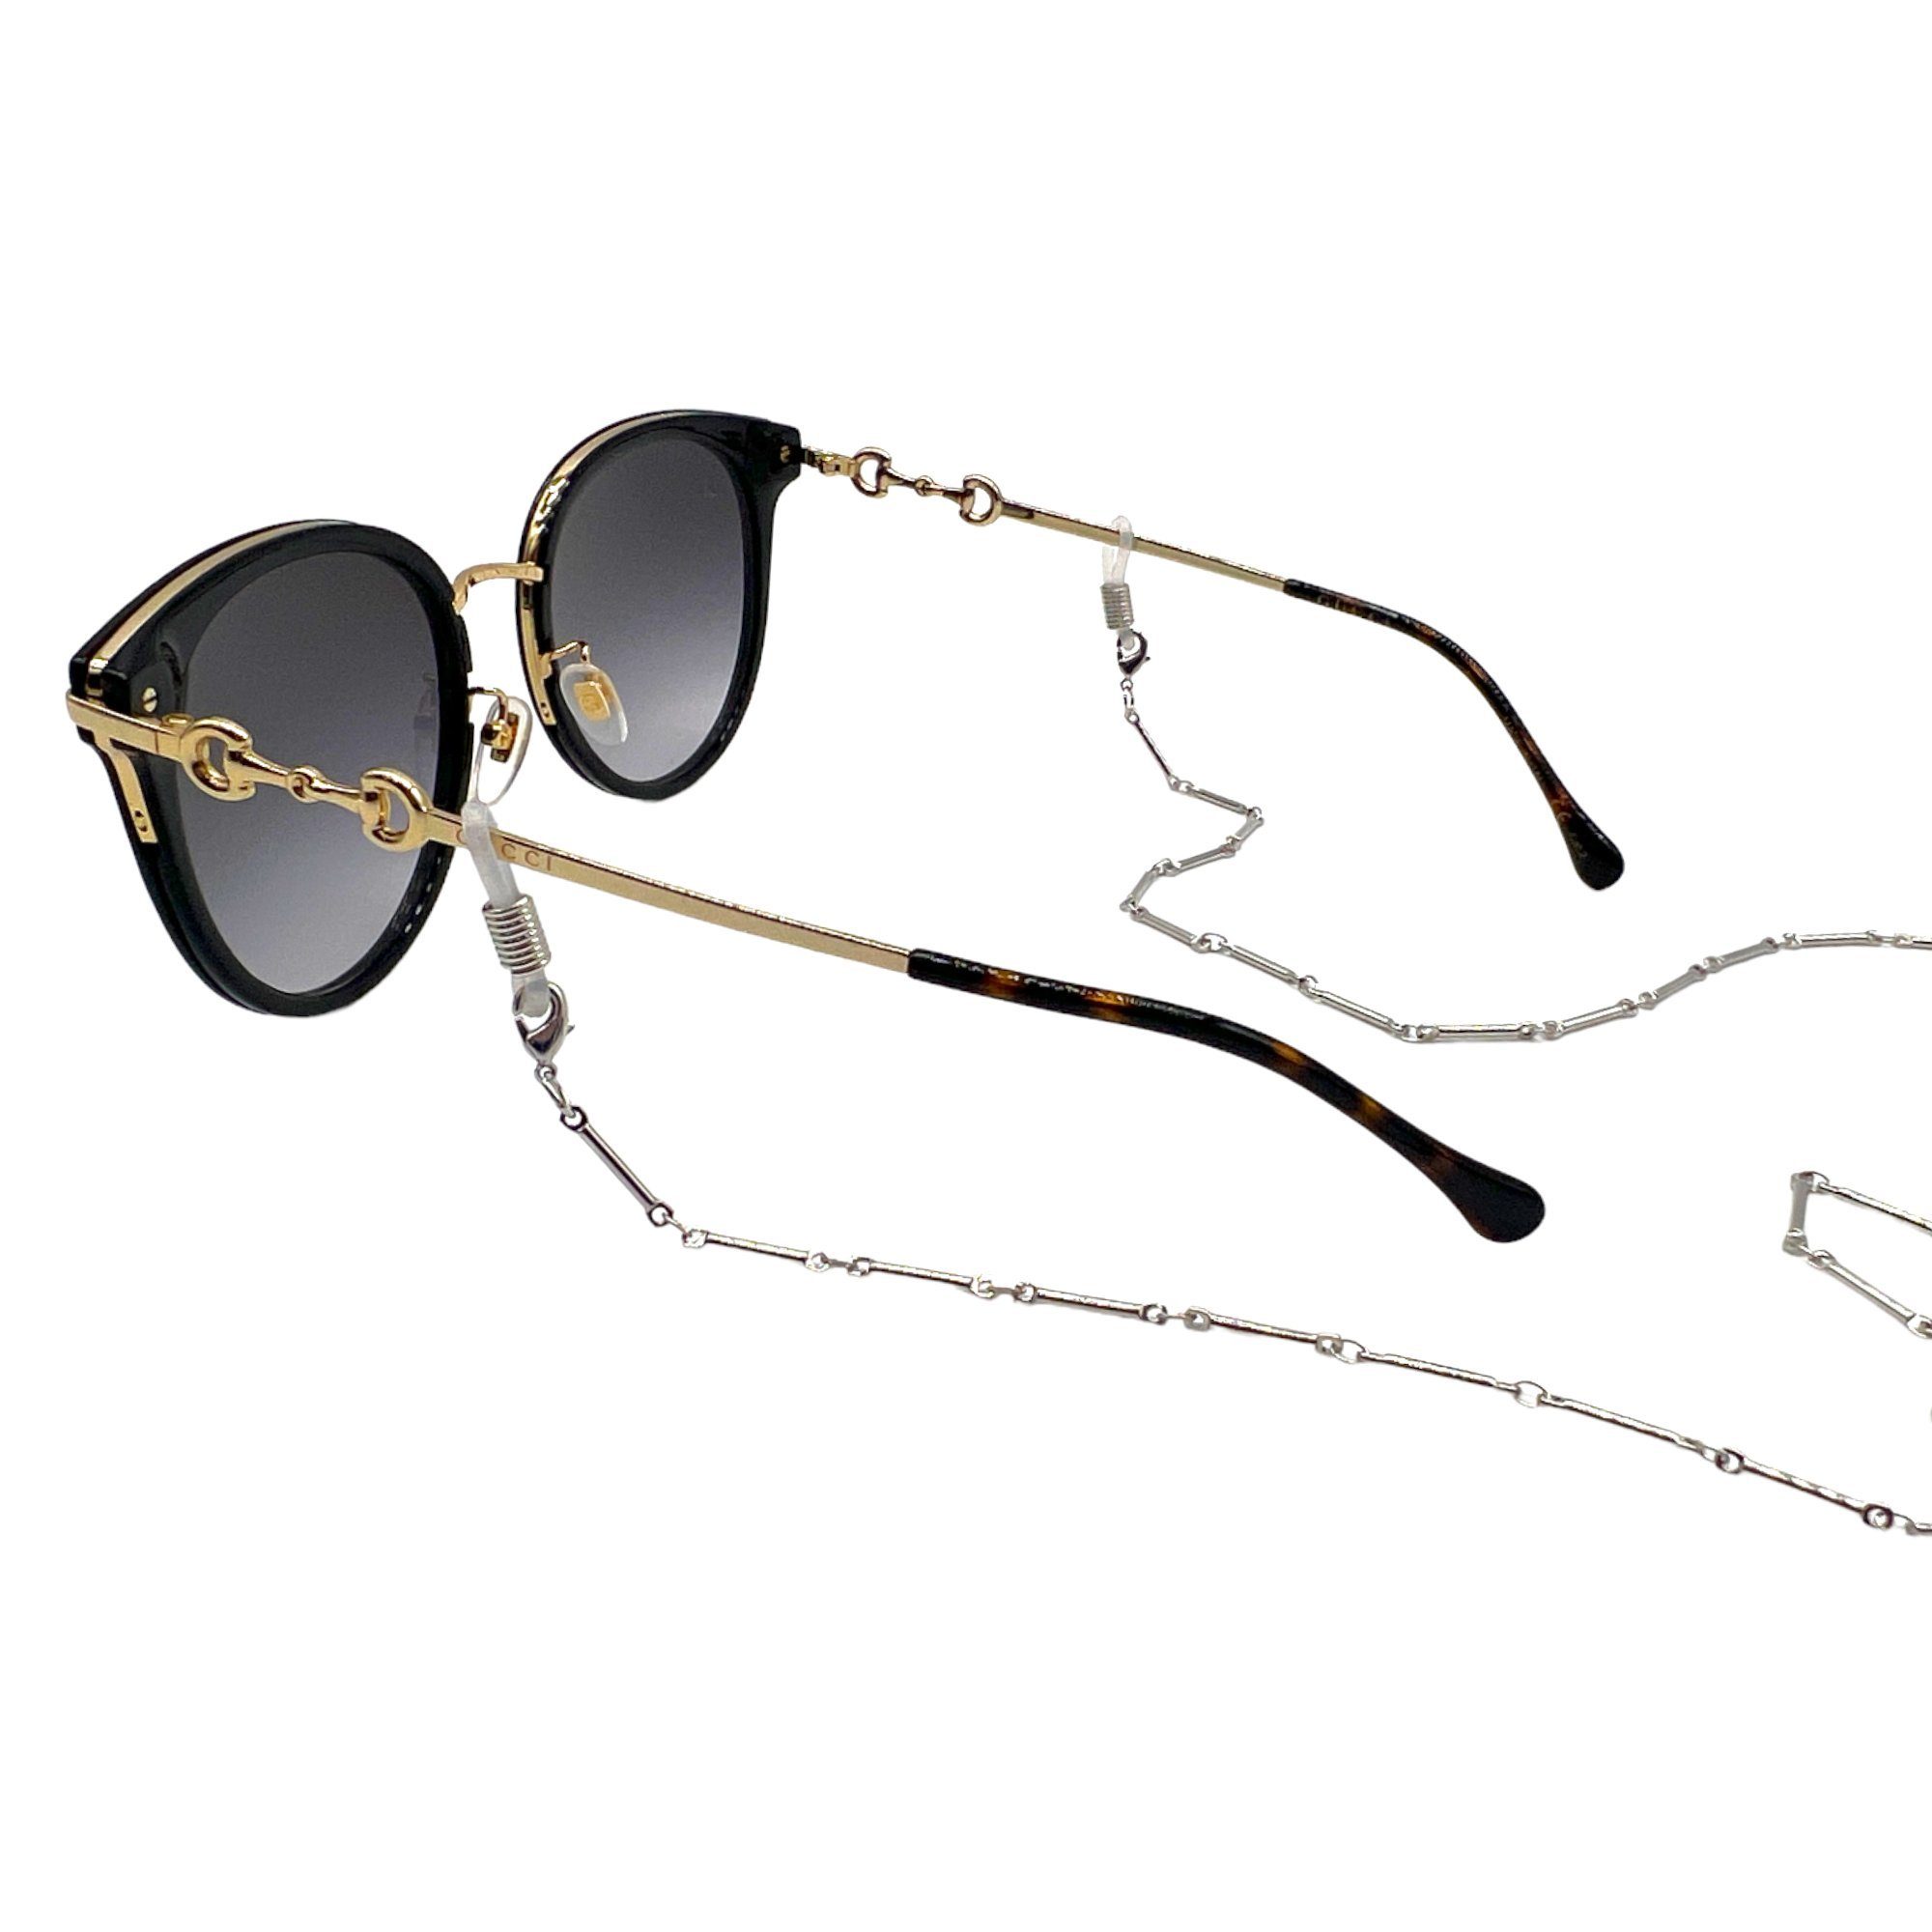 einzigartig GERNEO® Phuket & Maskenhalter, versilbert oder – korrosionsbeständige Brillenkette Brillenkette GERNEO vergoldet hochwertige – – Brillenkette